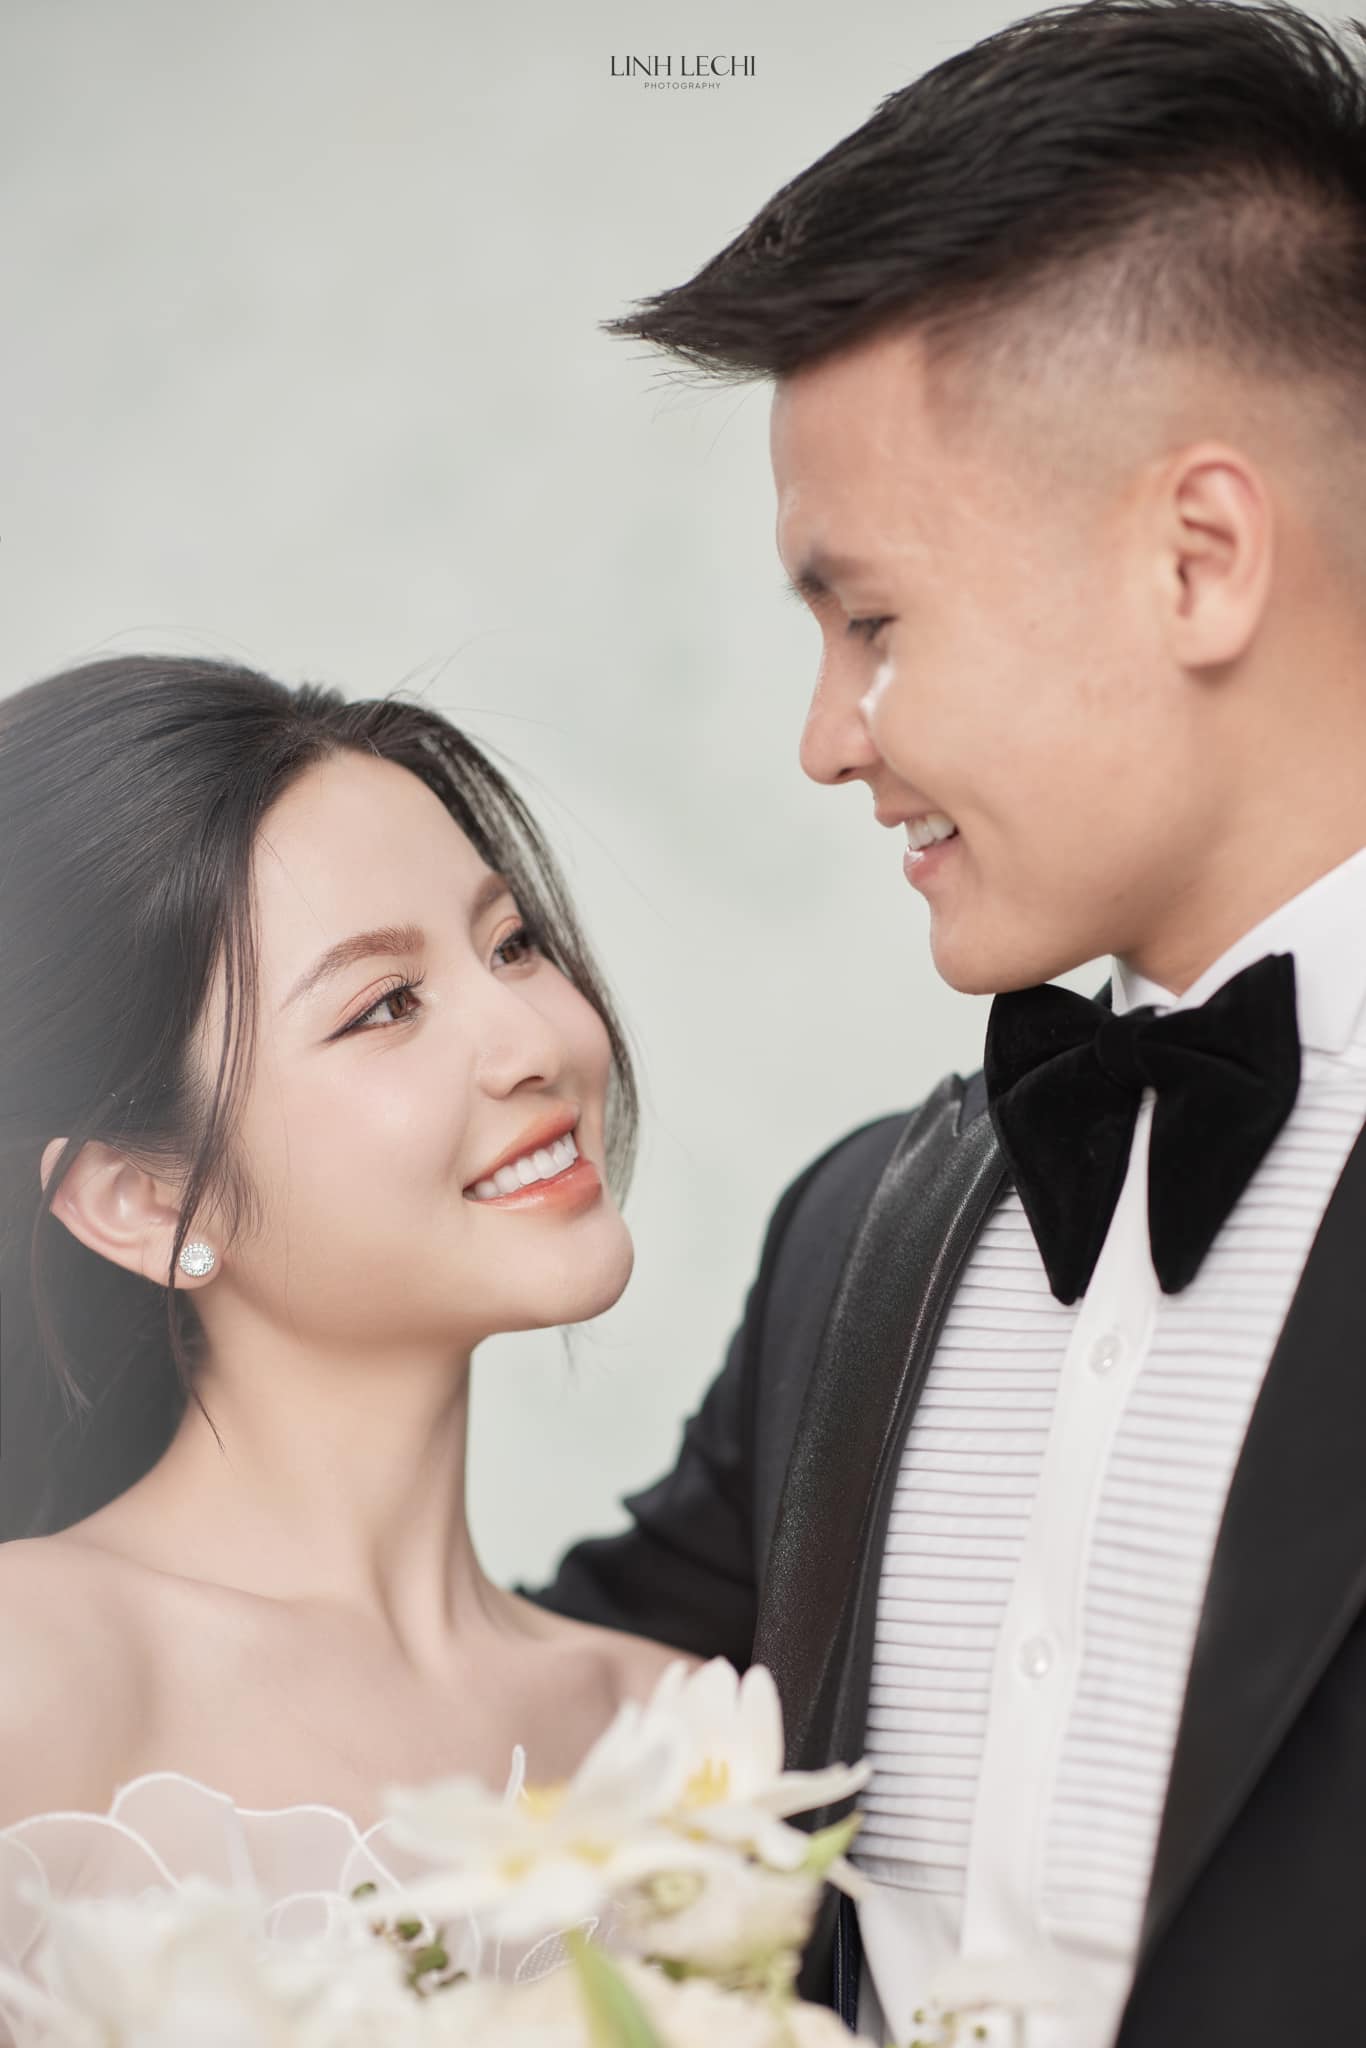 Quang Hải và Chu Thanh Huyền tung ảnh cưới, nhưng chiều cao 'bất ổn' của chú rể gây hoang mang - ảnh 2